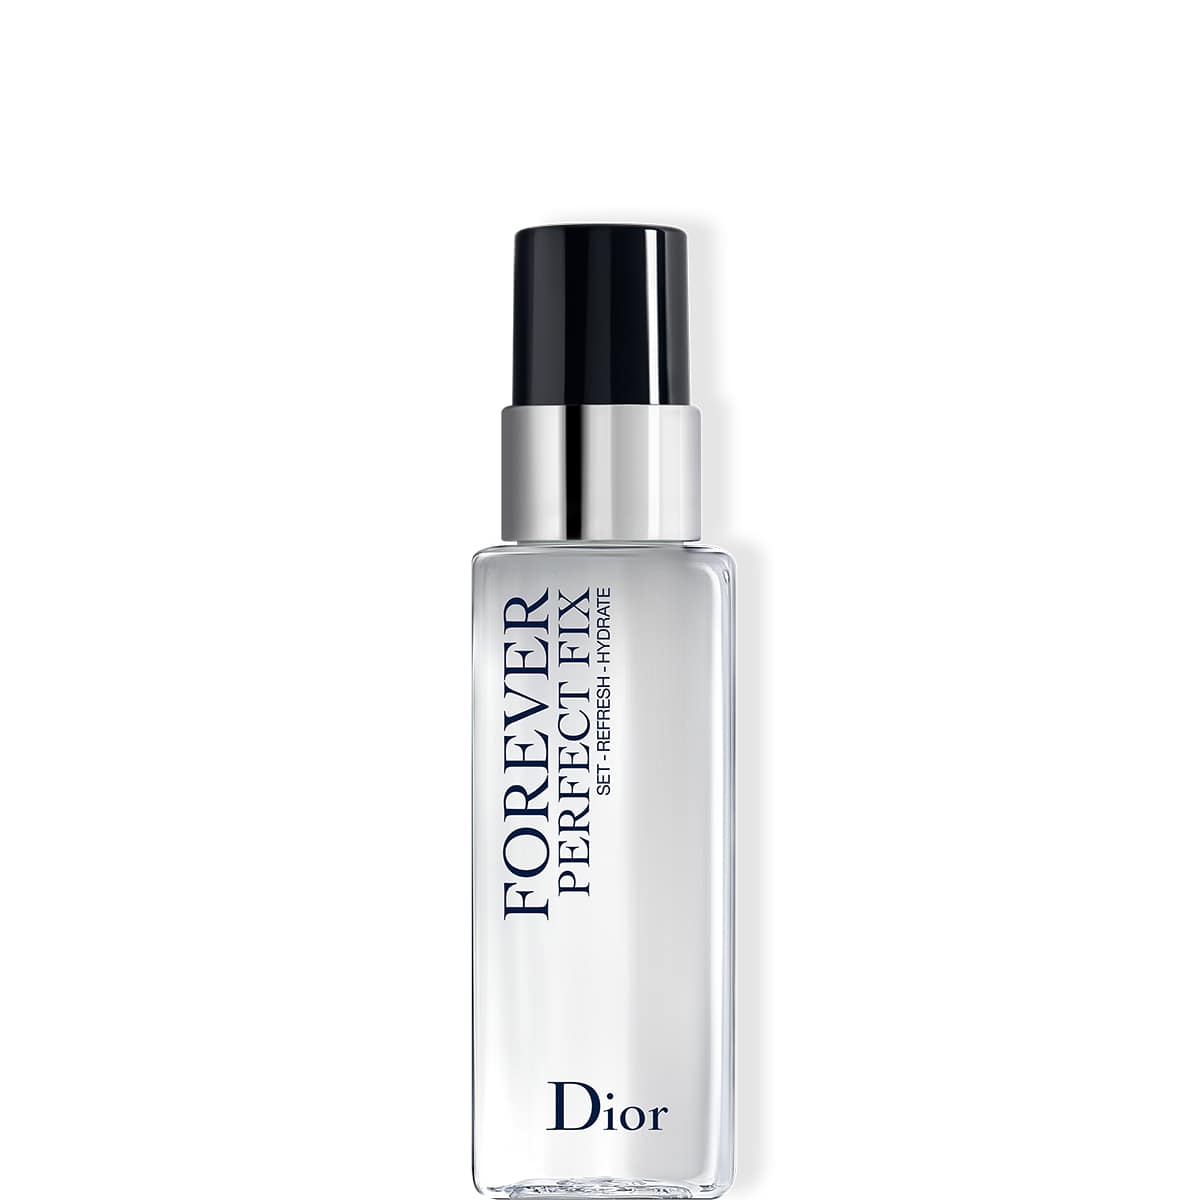 Dior スキンケアセット ミスト状化粧水 目元用美容液 ボディクリーム 